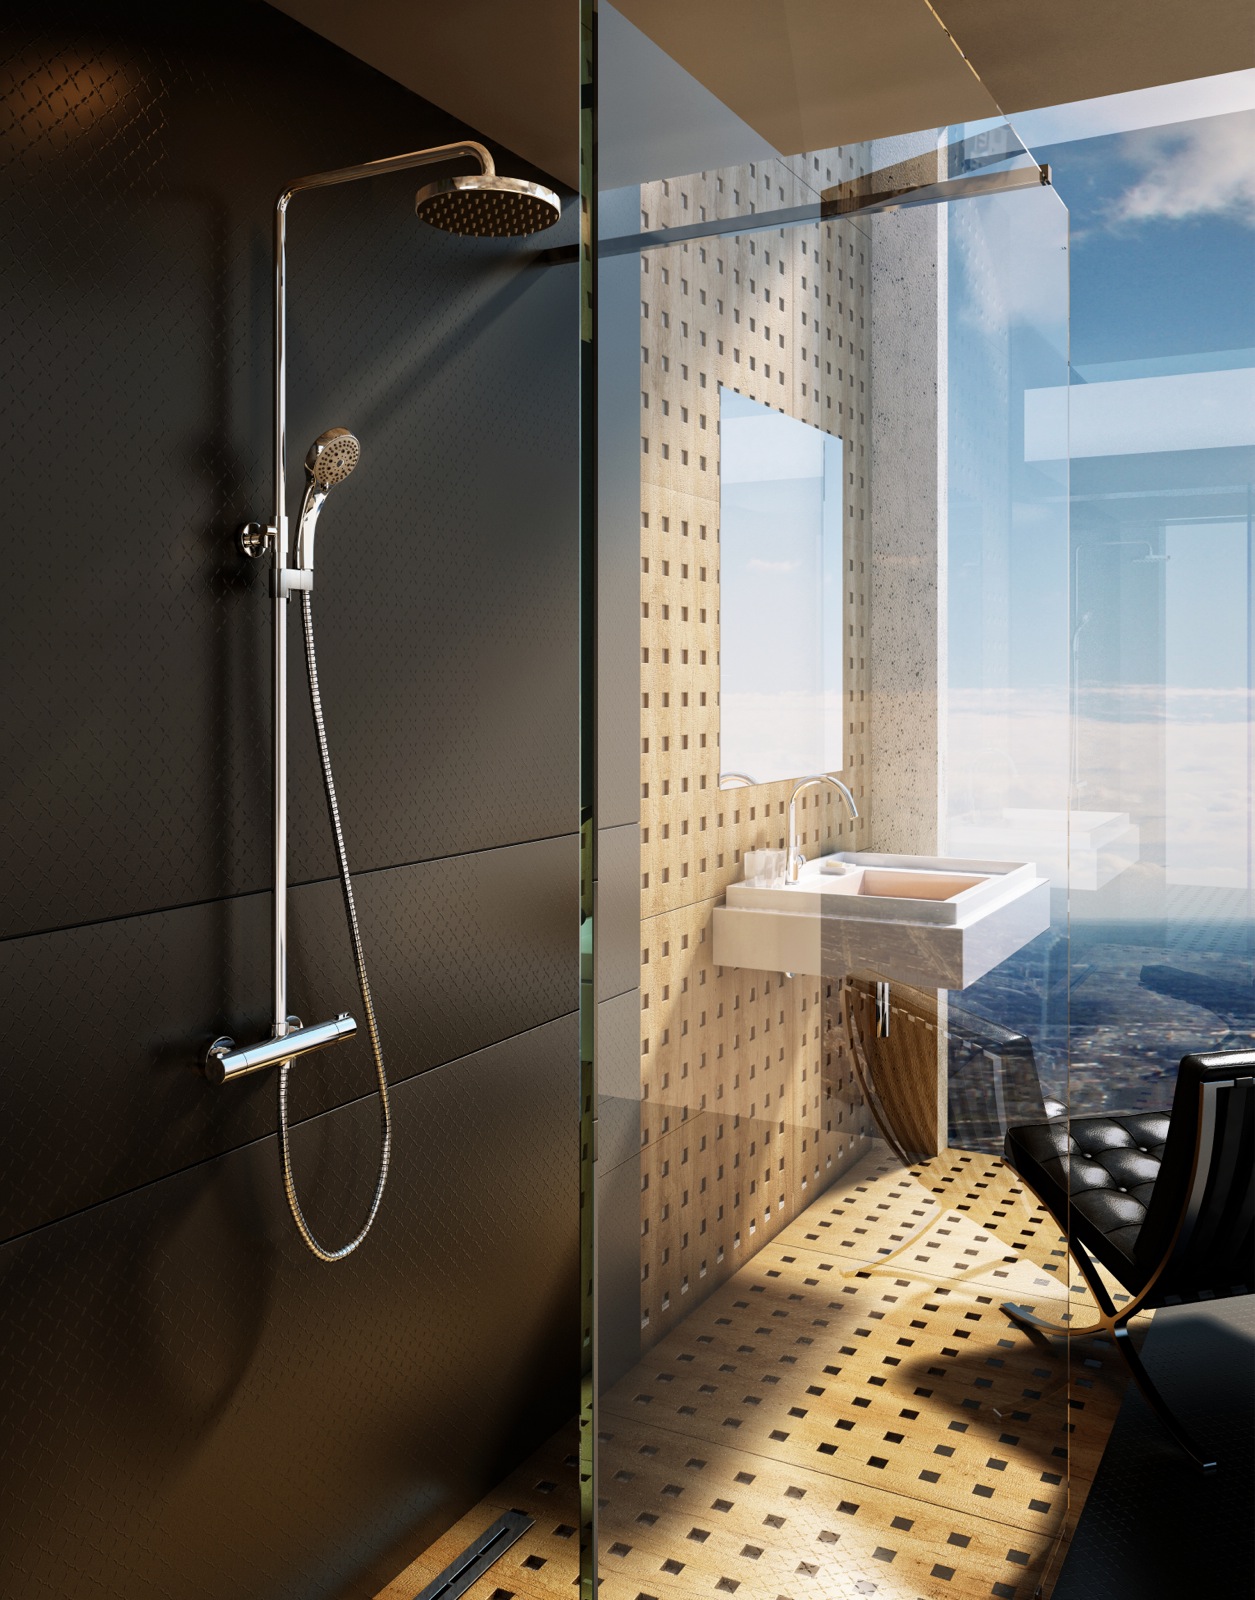 Zuhanyoszlopok - A kézi zuhanyfej és az esőztető zuhany egysége olyan komfortot nyújt, amelyben Ön is érzéki örömét lelheti.